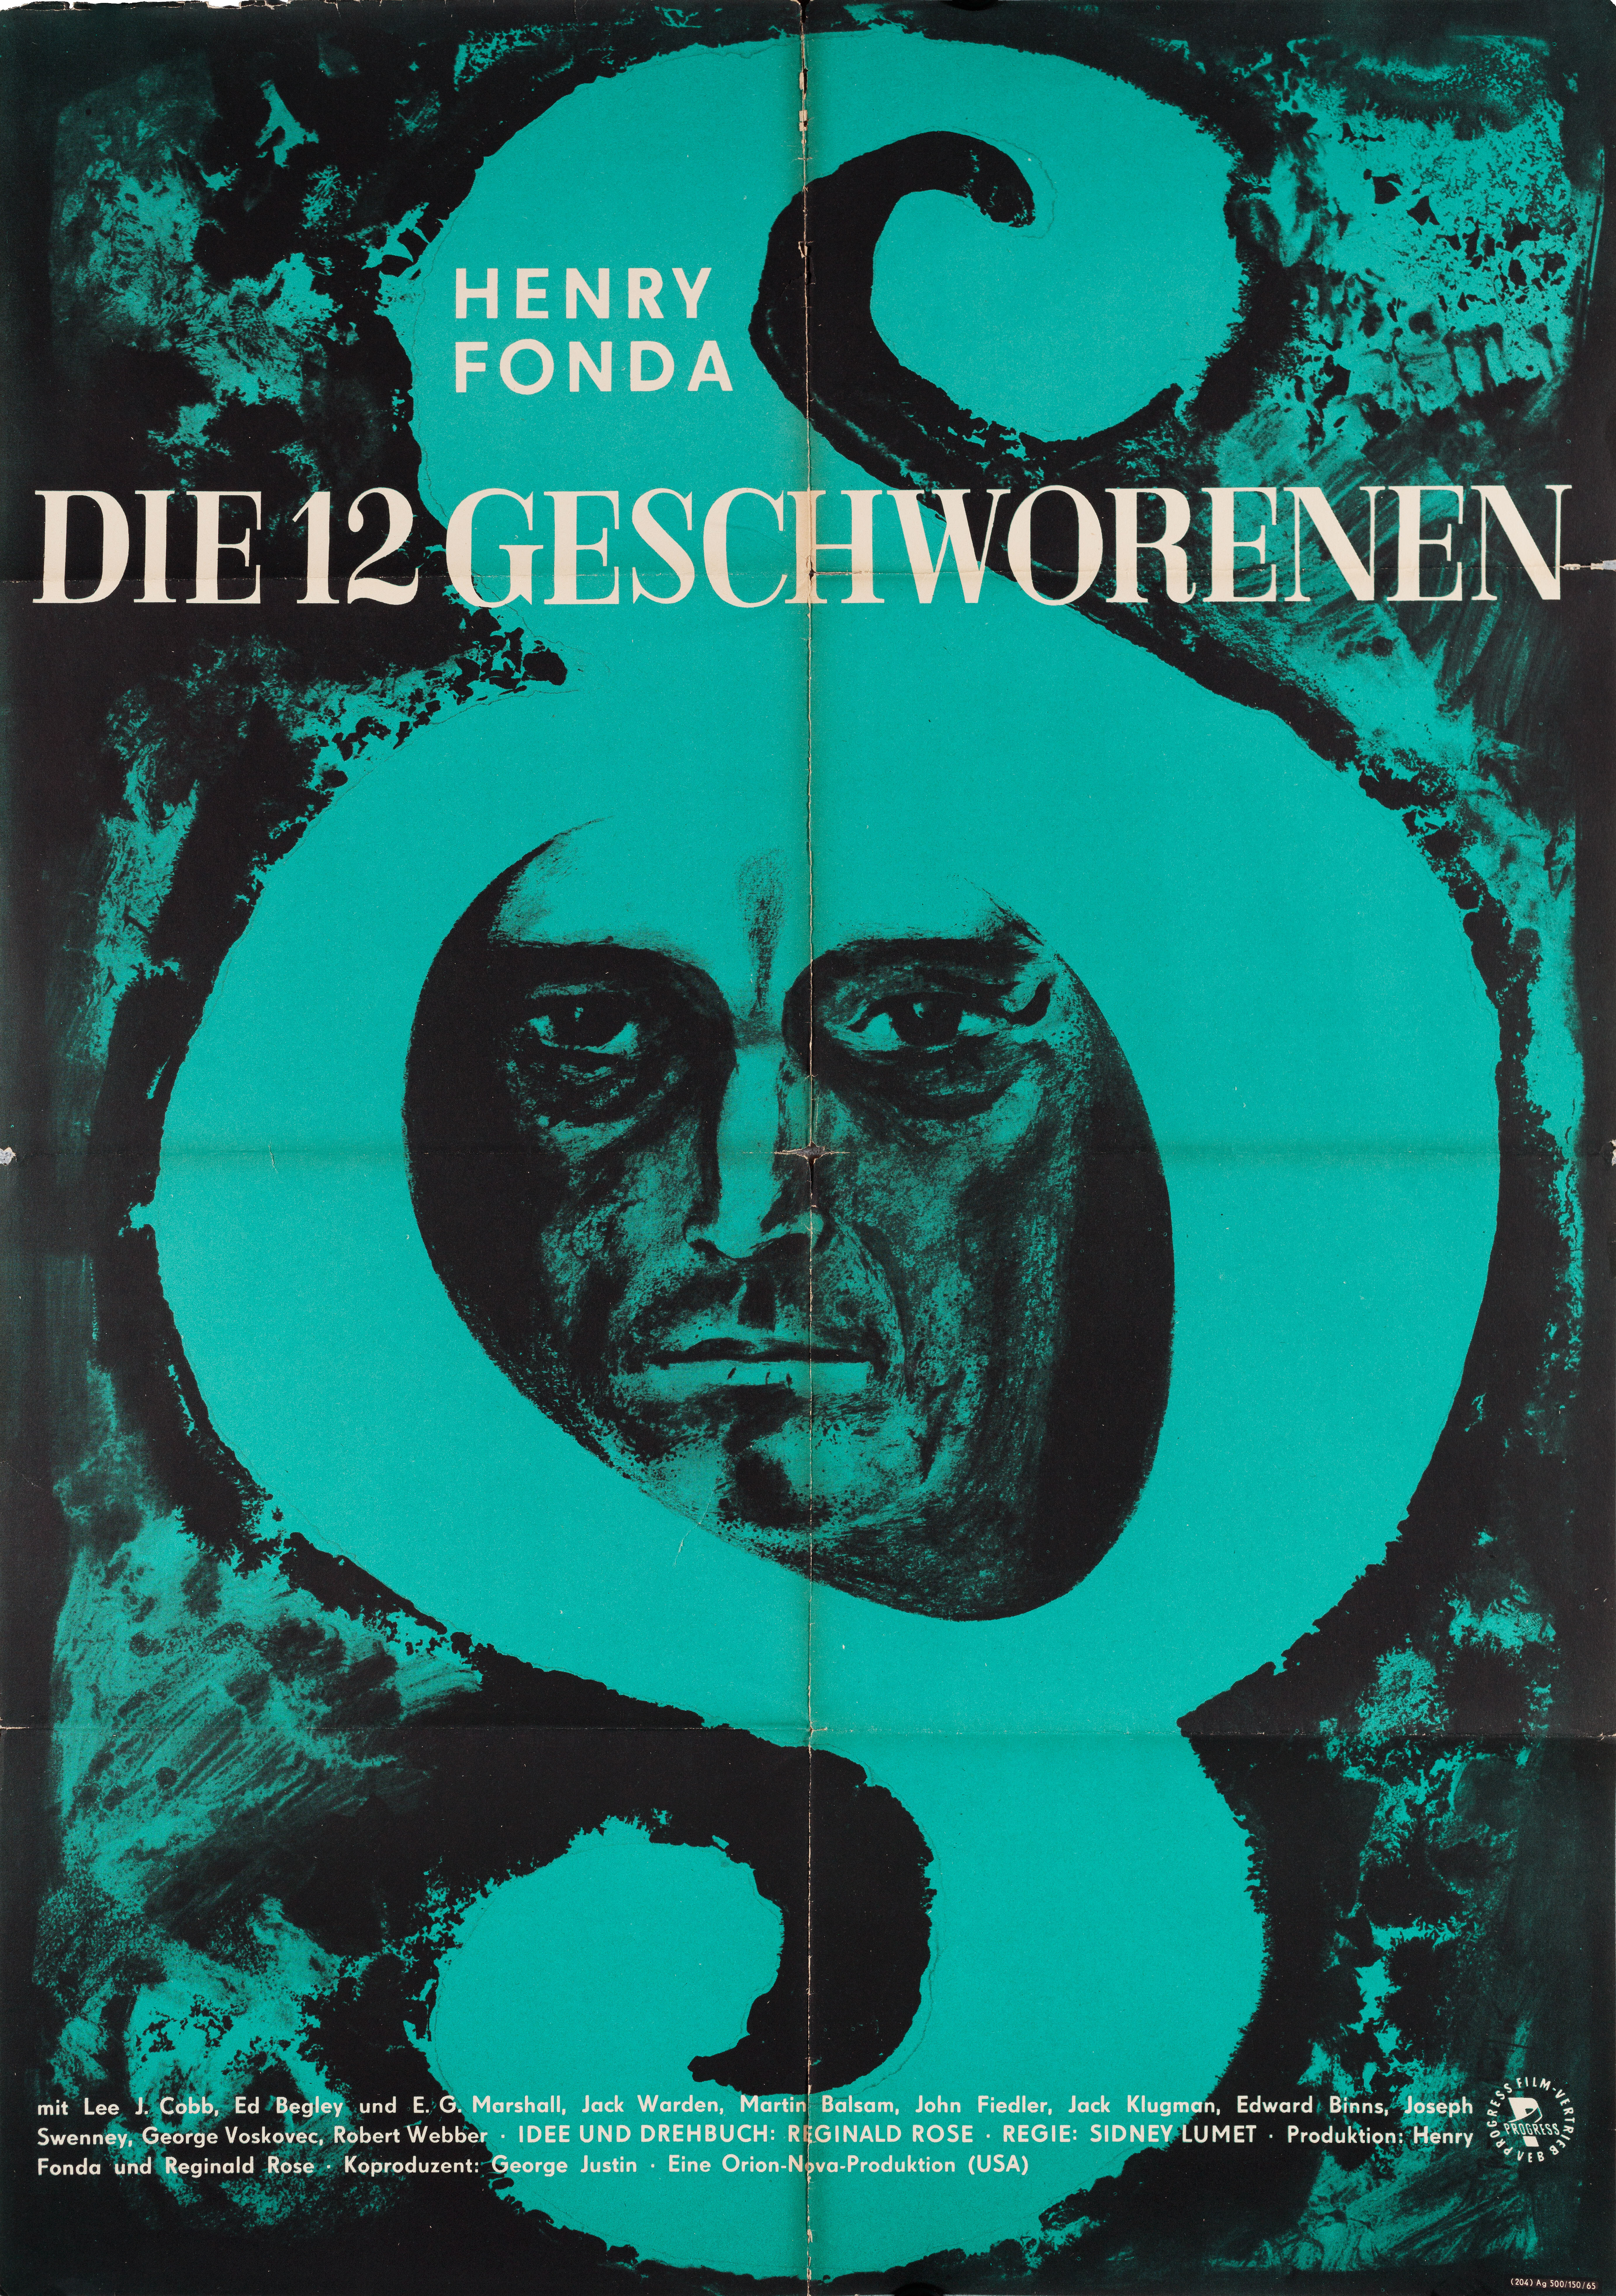 12 разгневанных мужчин (12 Angry Men, 1957), режиссёр Сидни Люмет, иллюстрированный постер к фильму (East Германия, 1965 год)